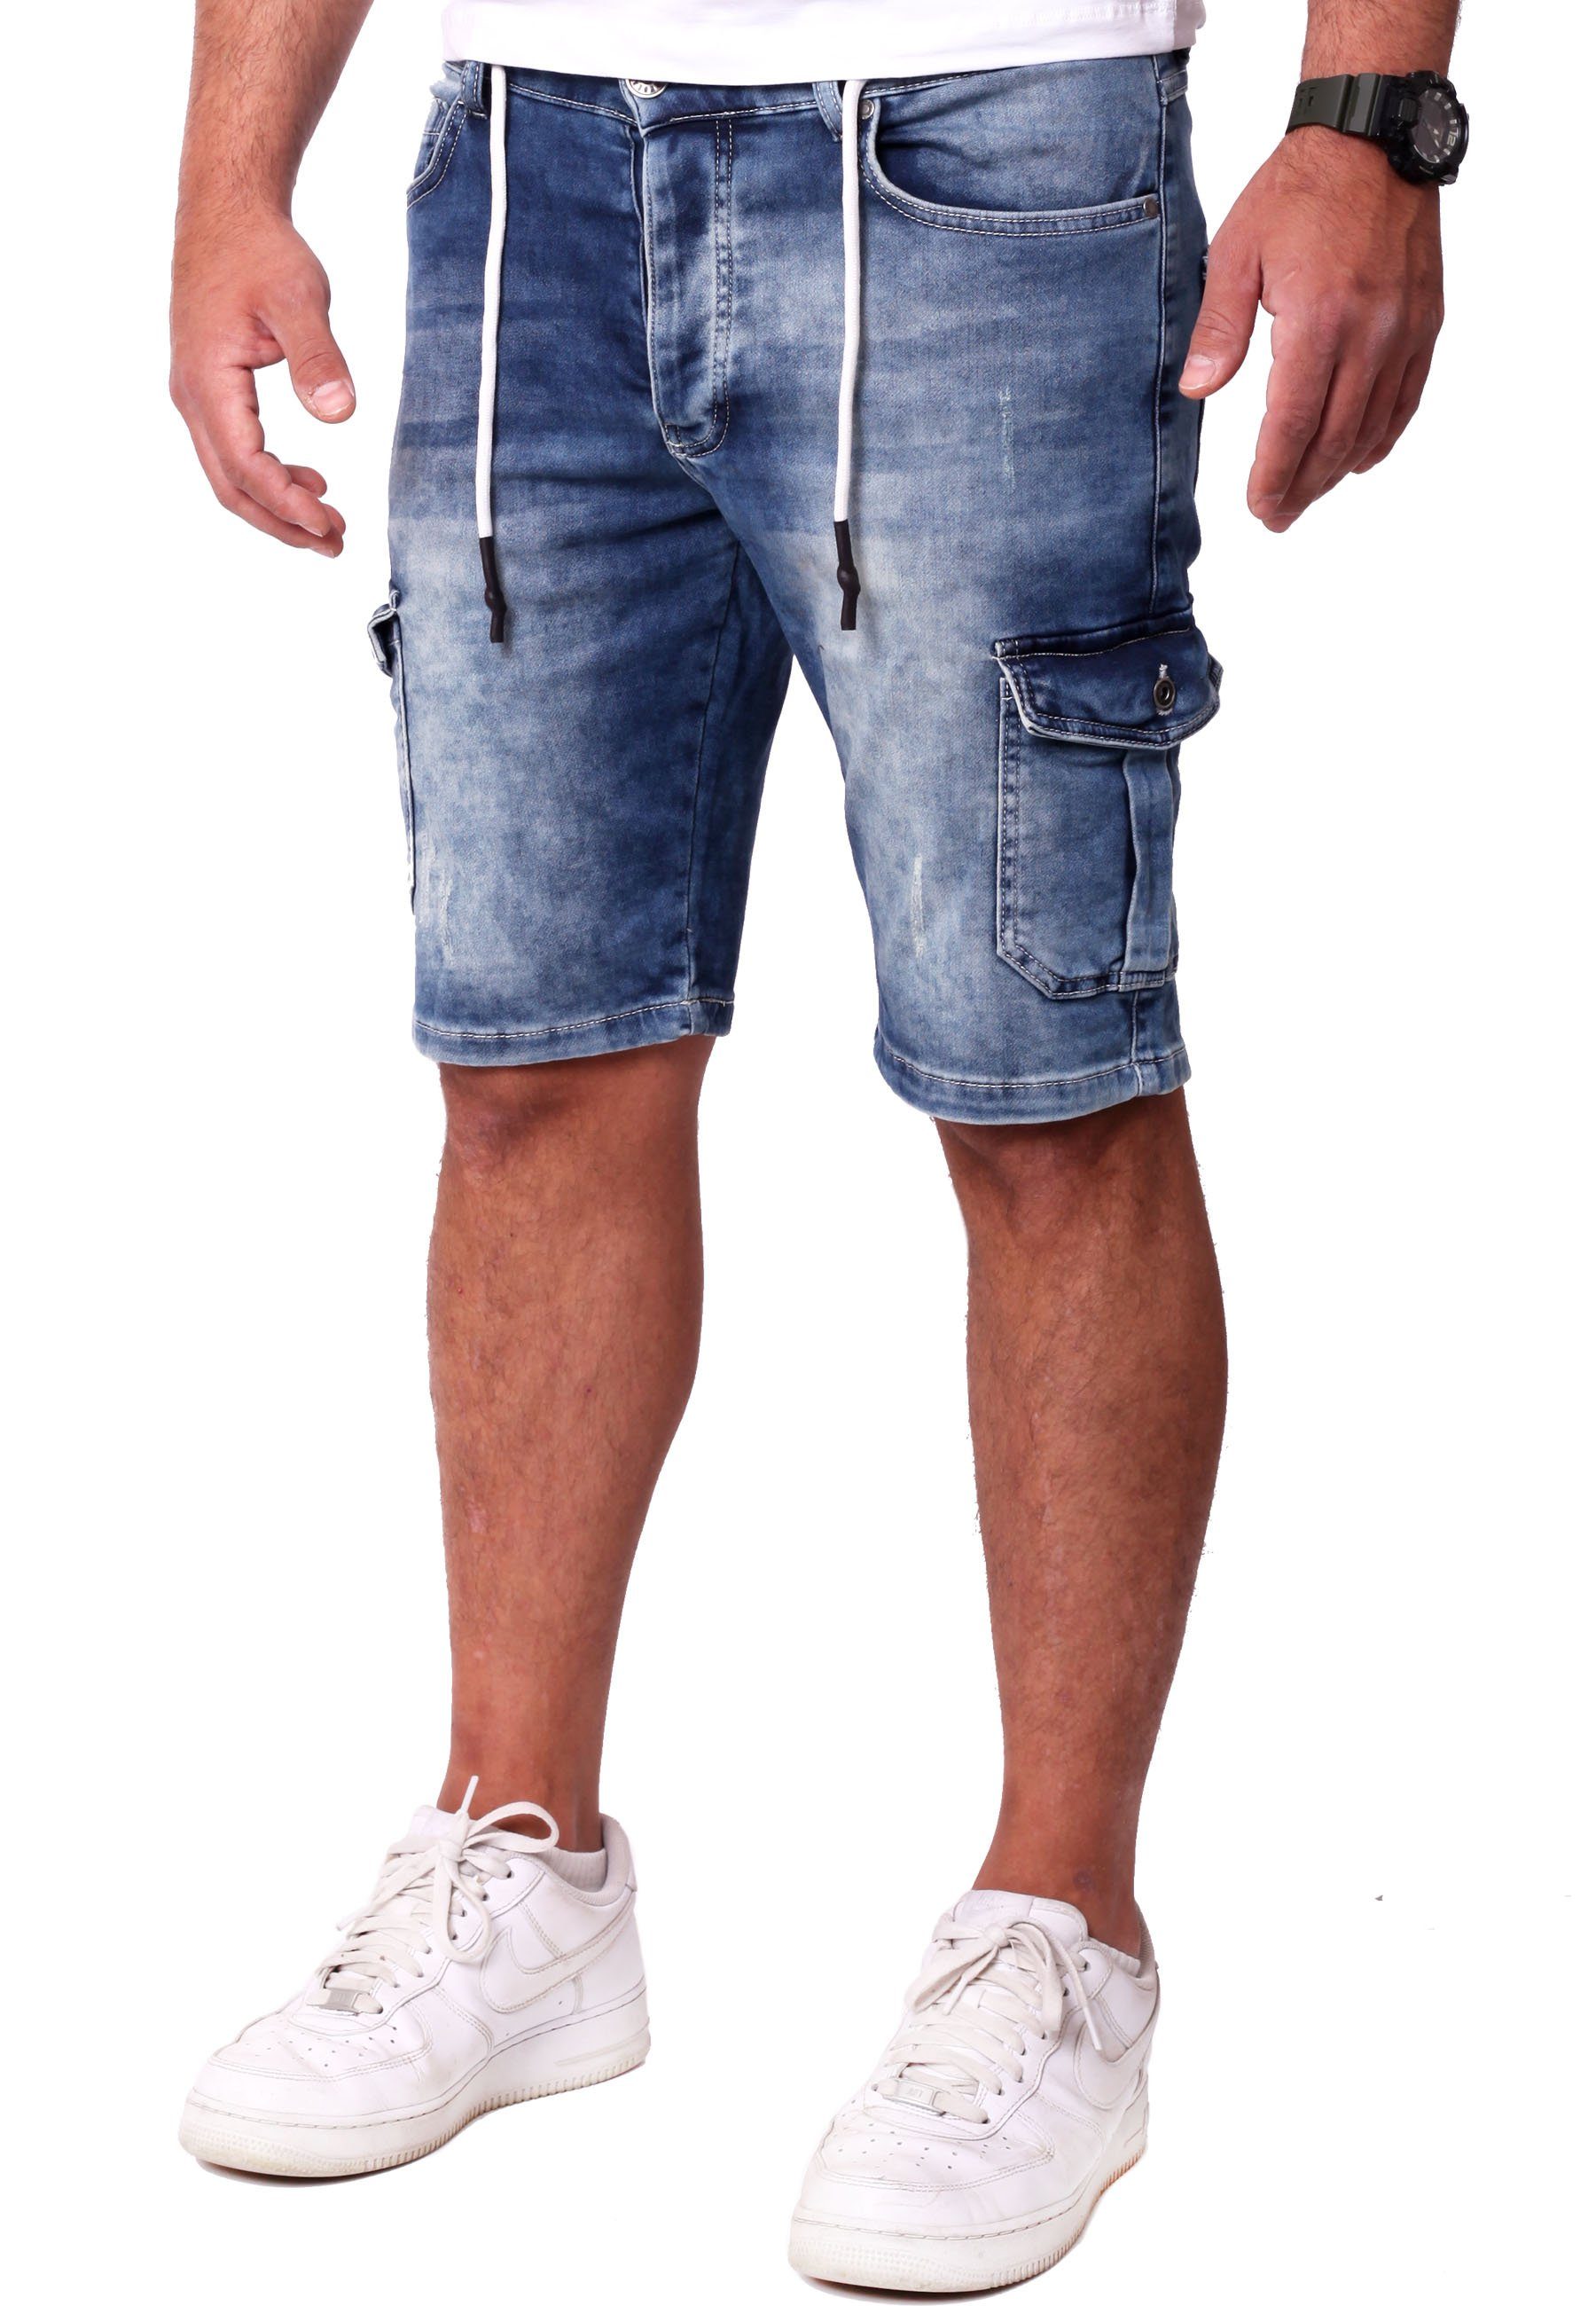 Reslad Jeansshorts Reslad Sweatjeans Hosen Herren Jeansbermudas Cargo-Shorts - Shorts Sweathose Jeans-Hose Jeans Sommer Stretch in Kurze Cargo